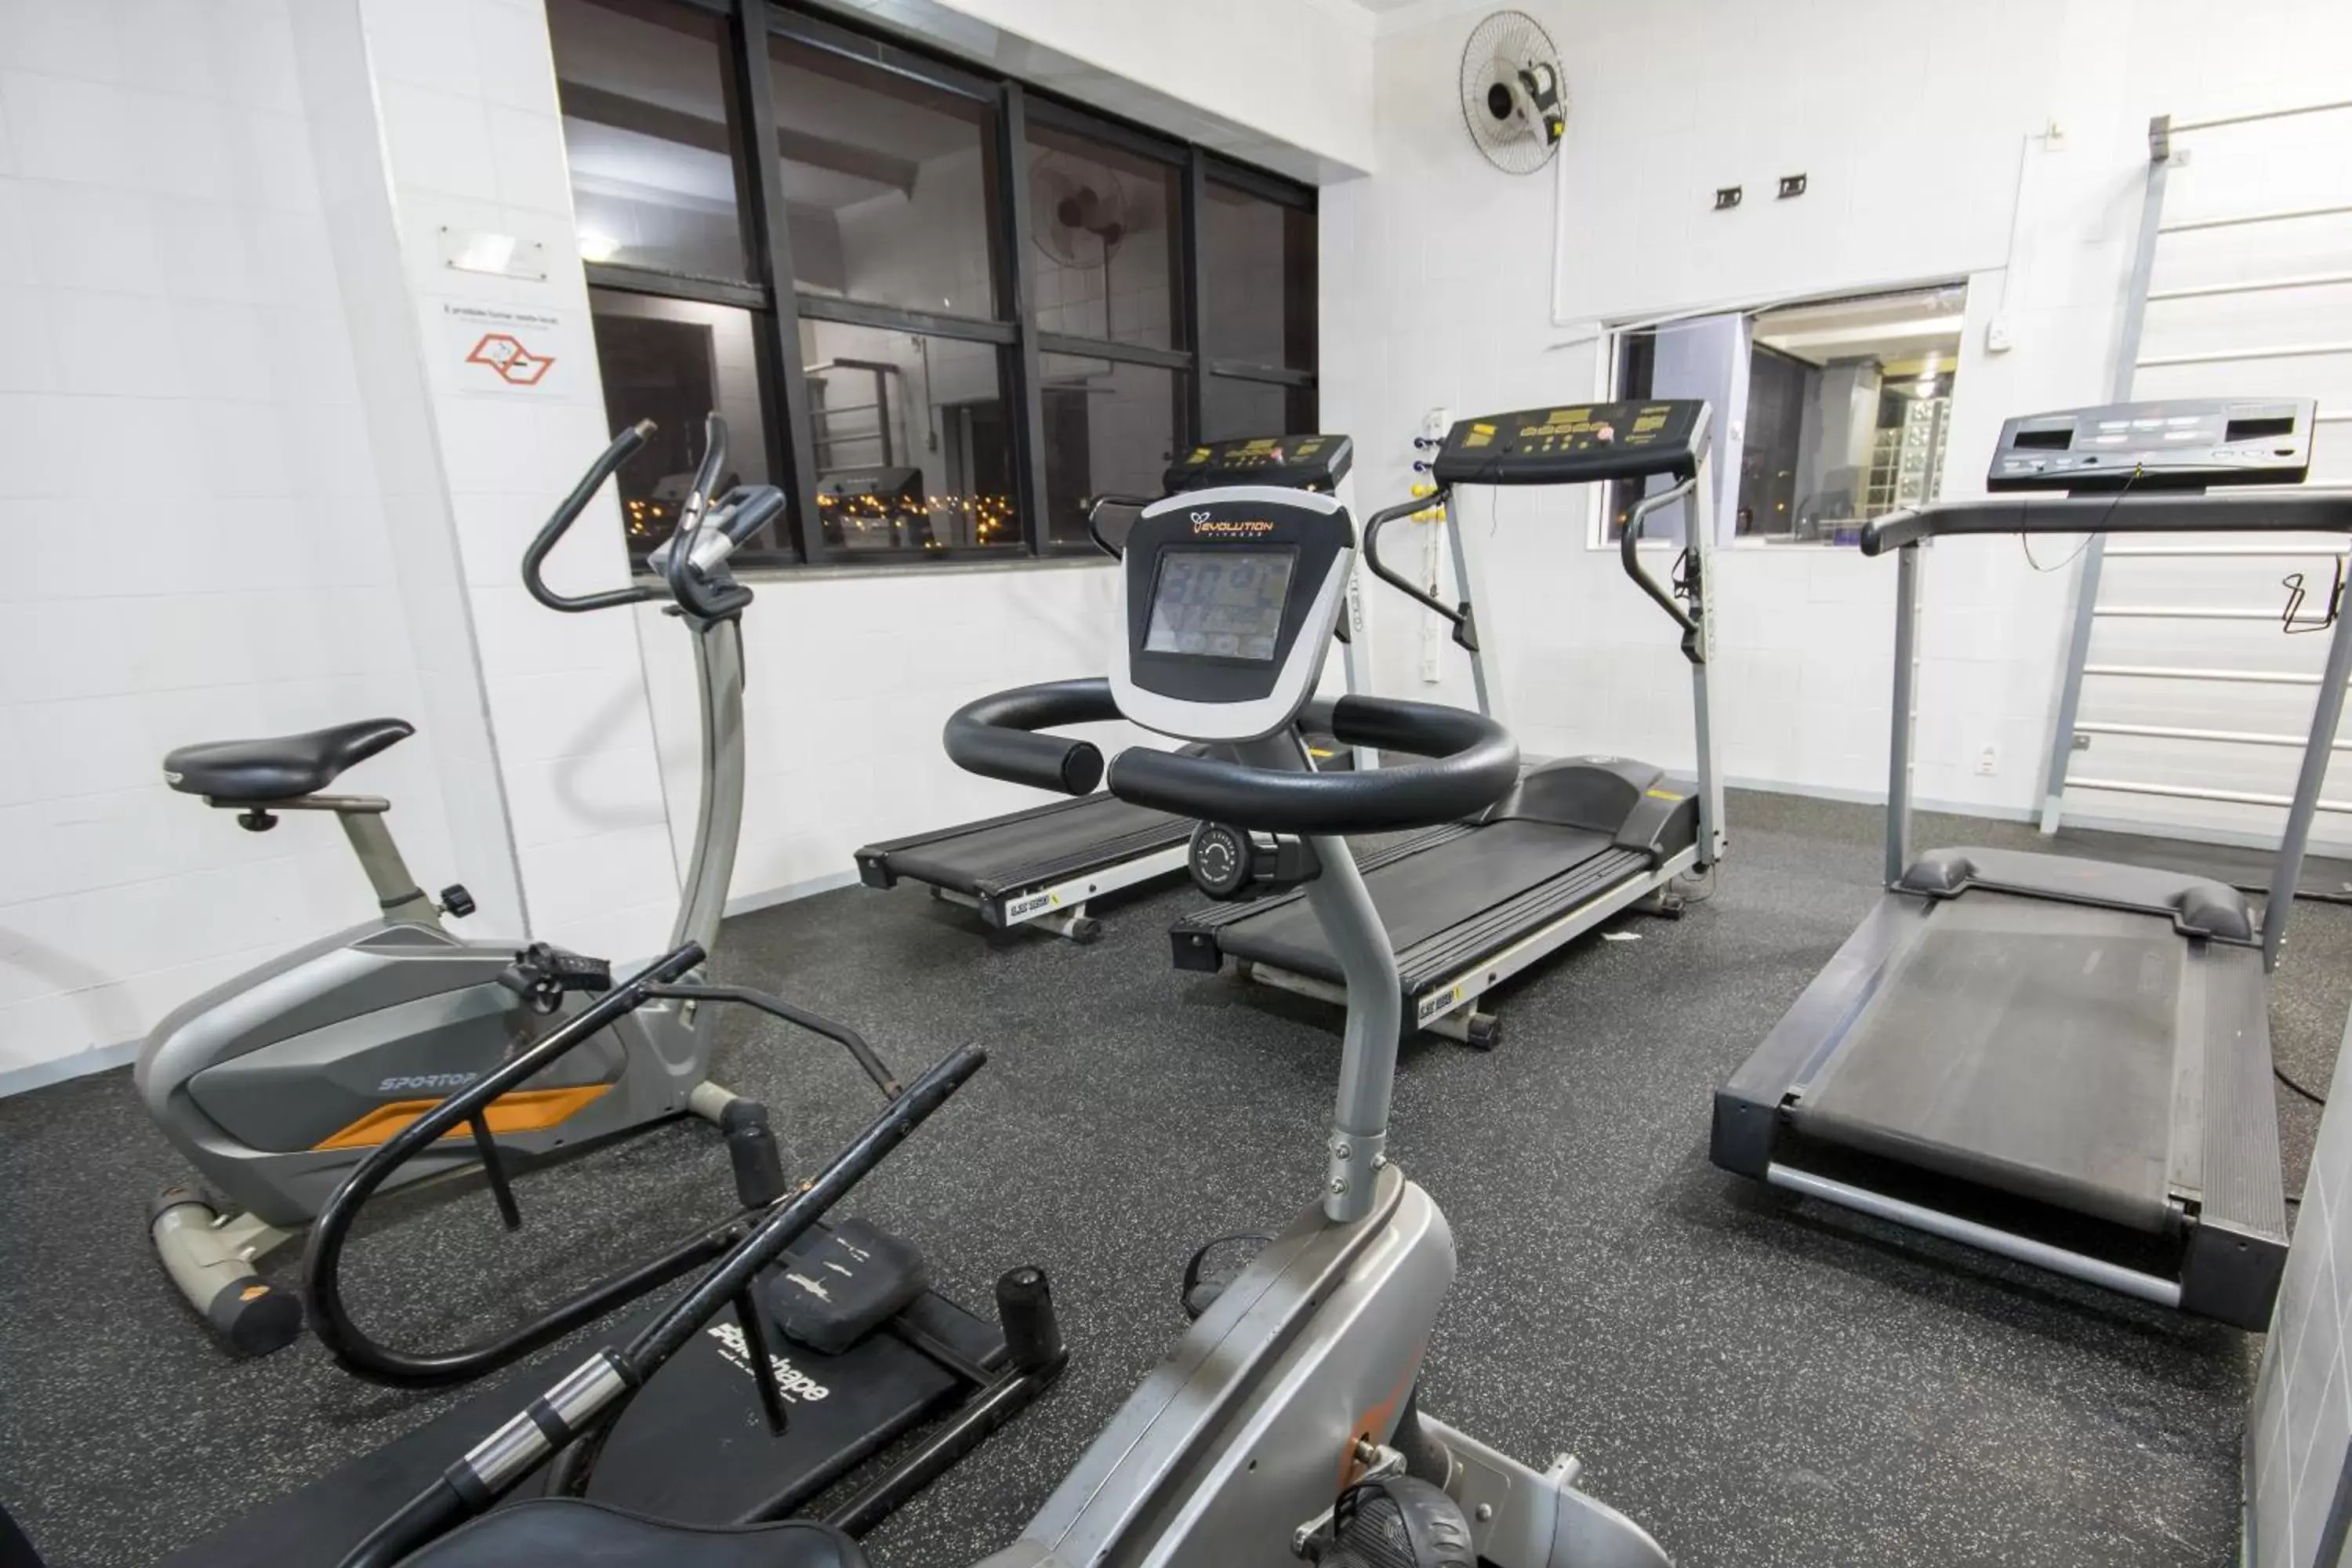 Fitness centre/facilities, Fitness Center/Facilities in Dan Inn Sorocaba